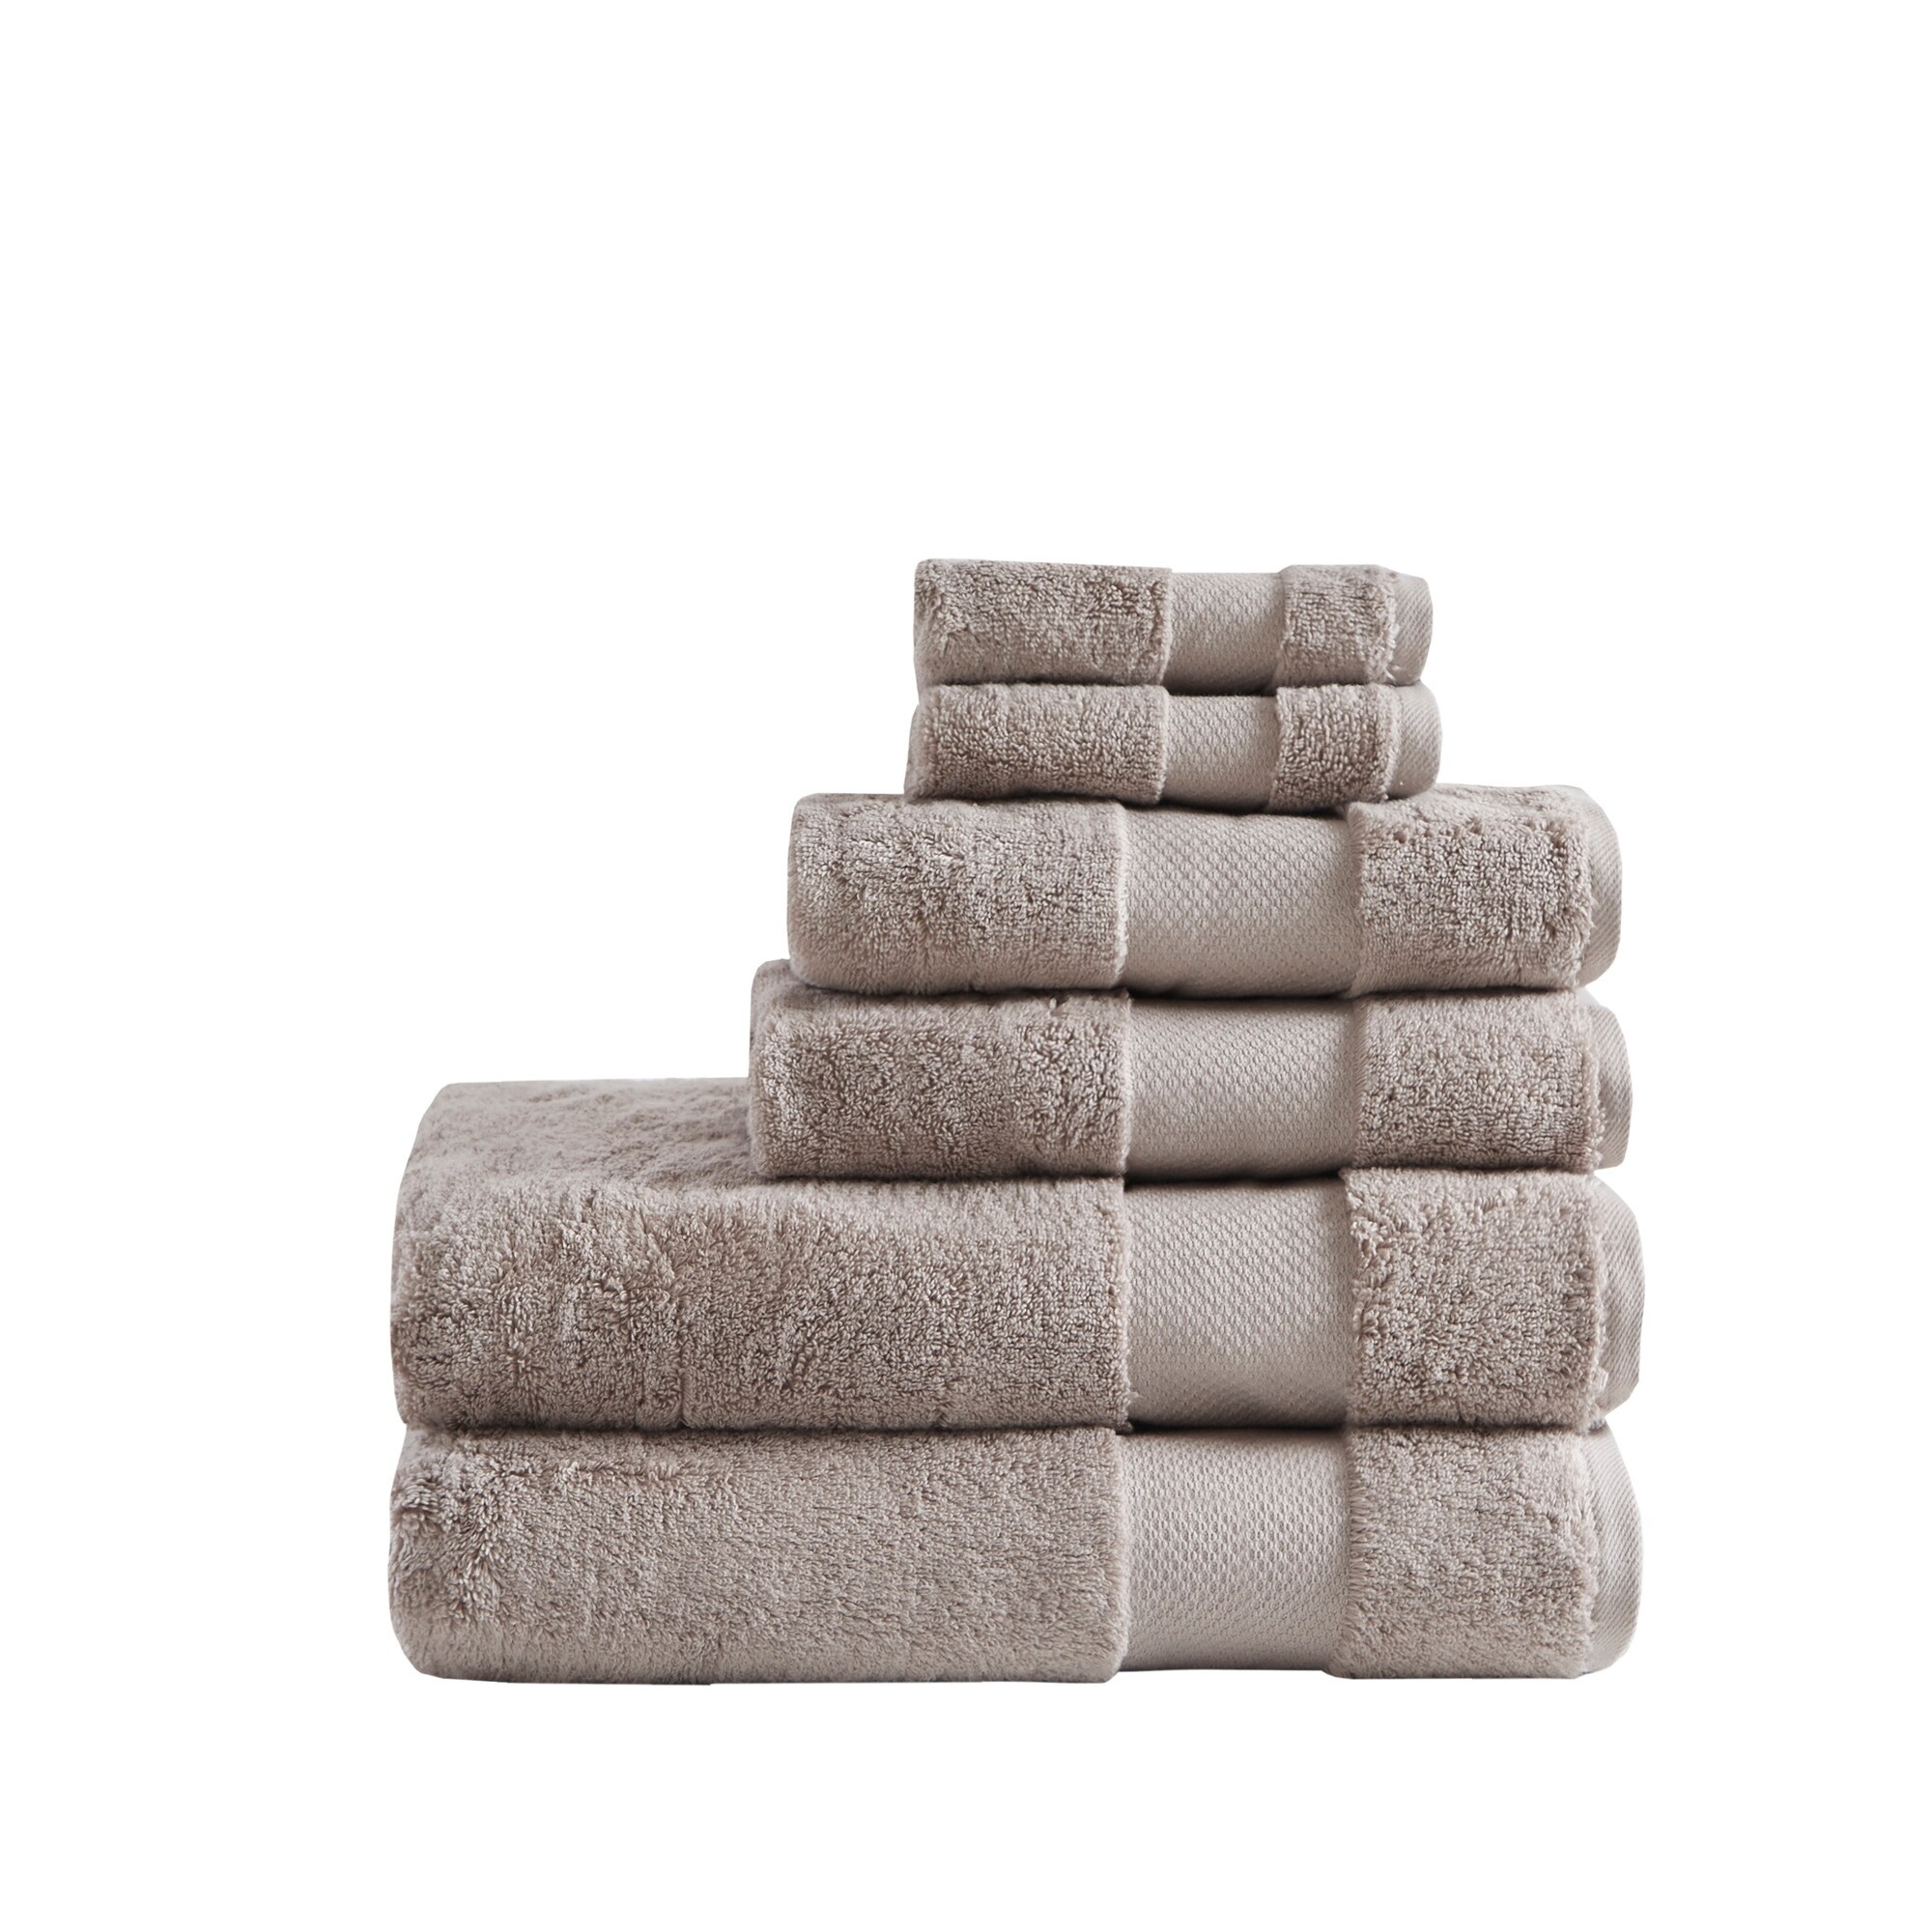 https://ak1.ostkcdn.com/images/products/is/images/direct/3431990c37dbd27bcaf82e9601cd829d8d7dd7ff/Madison-Park-Signature-Turkish-Cotton-6-Piece-Bath-Towel-Set.jpg